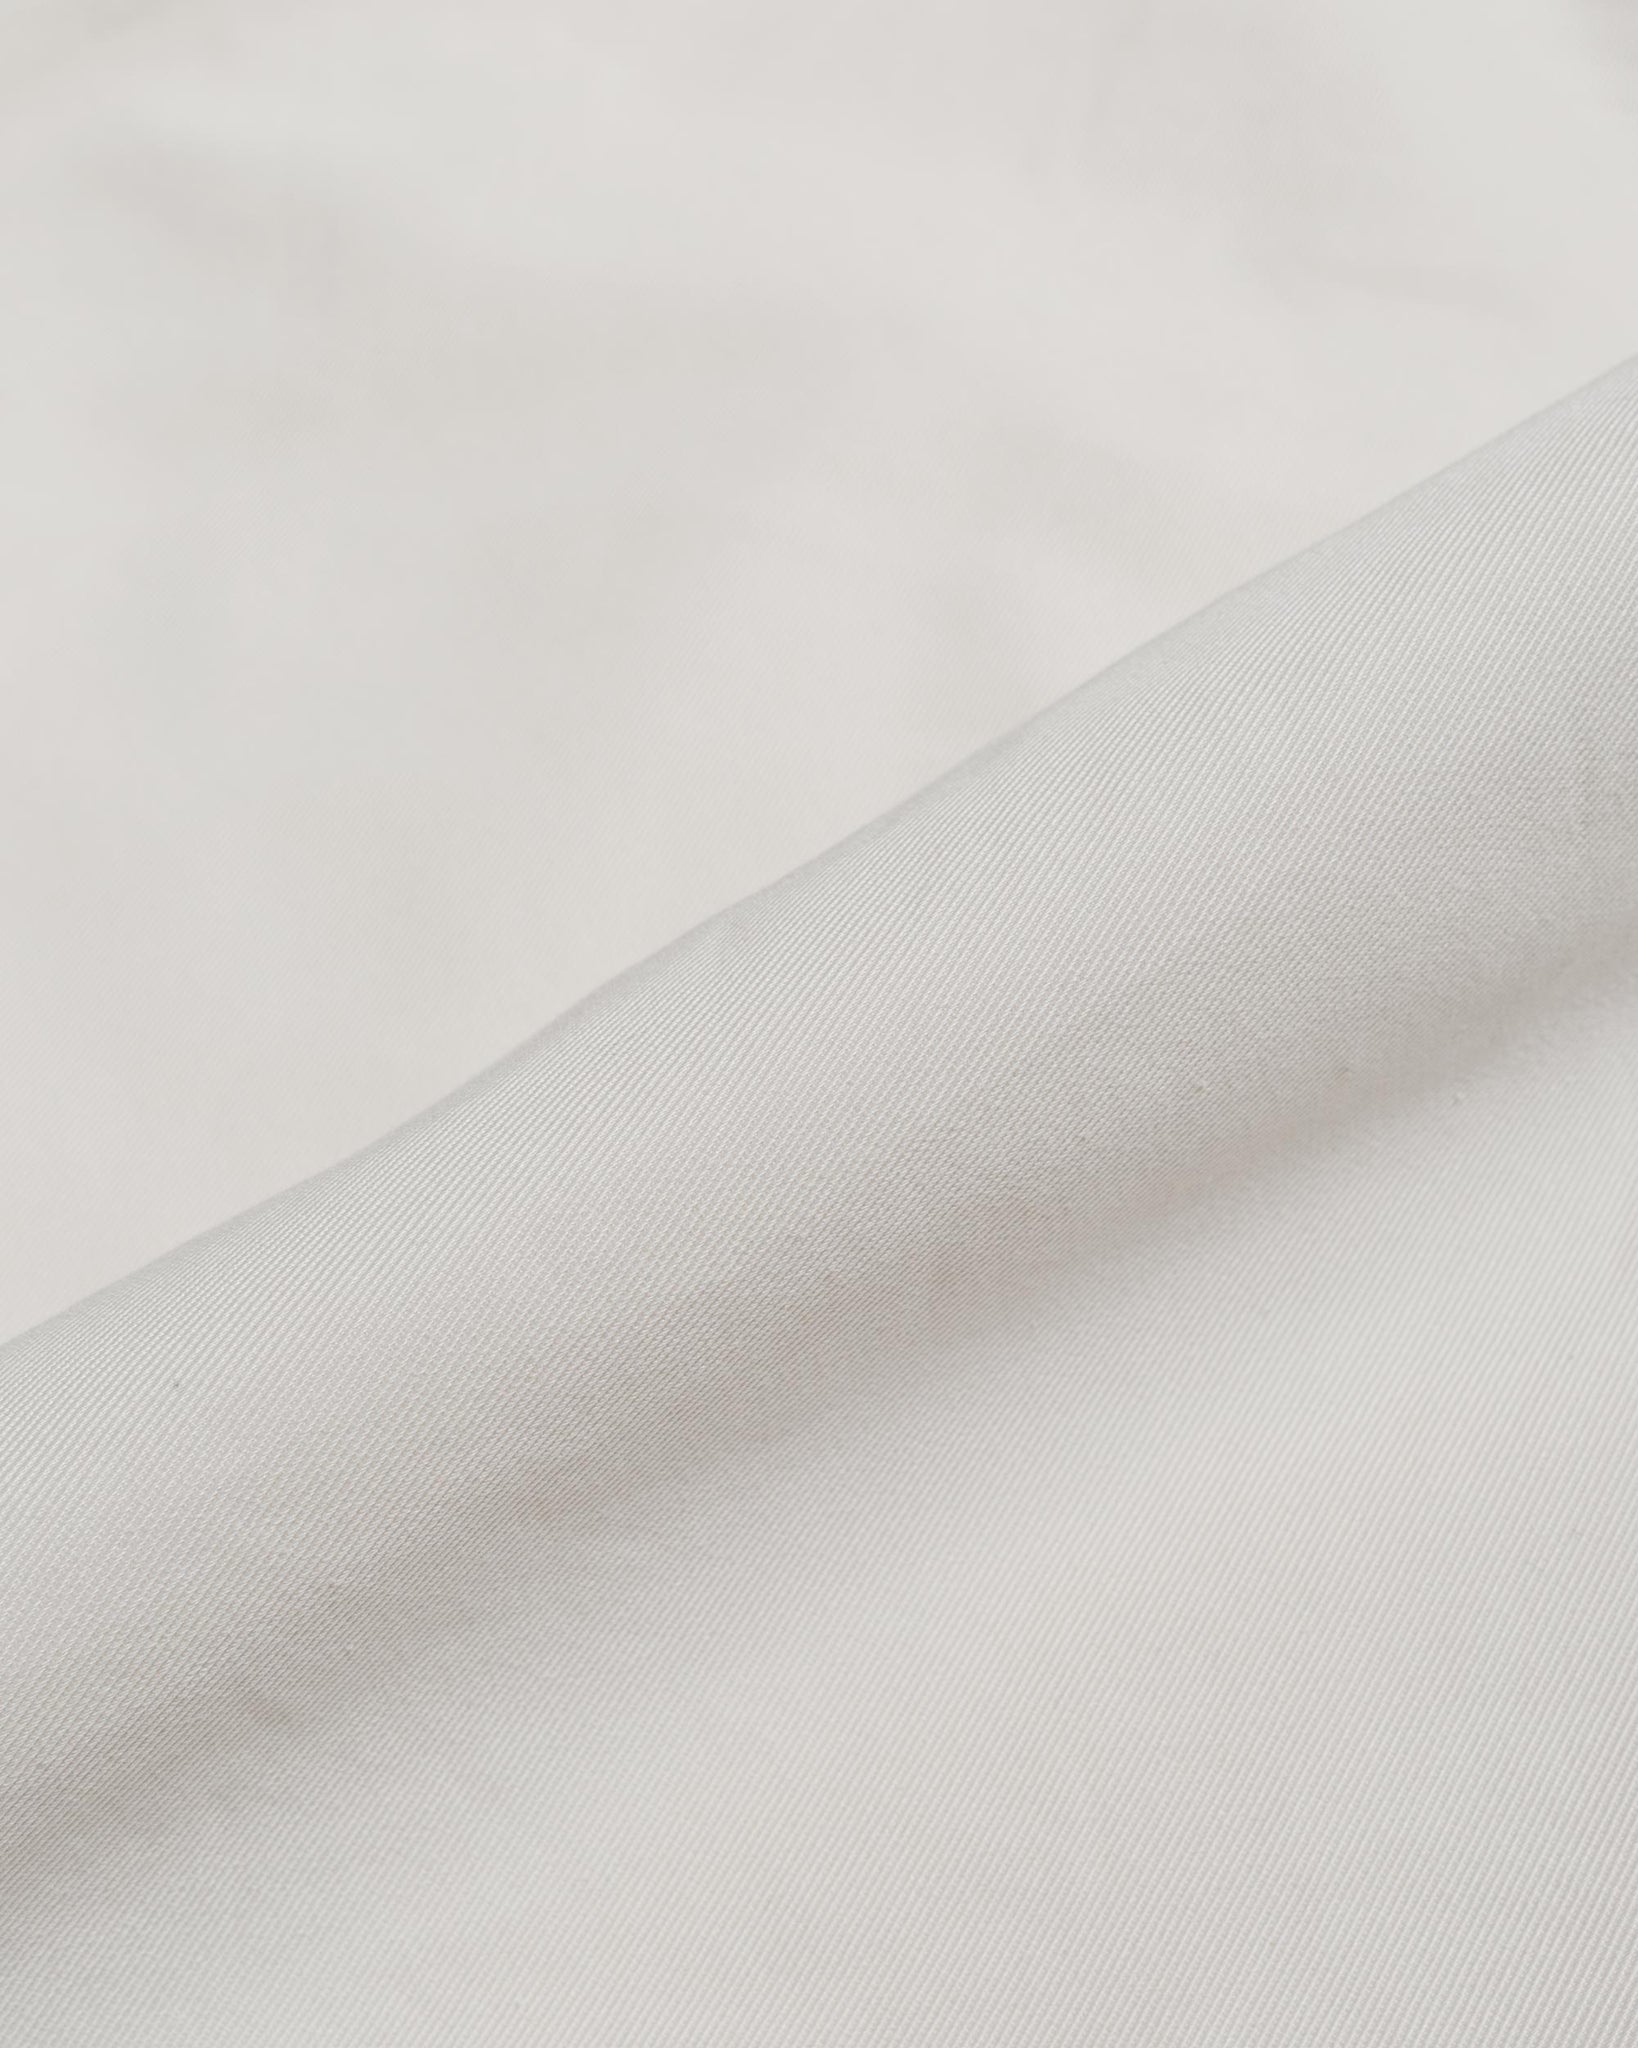 The Corona Utility CP011 Half Overalls Cotton Drill Natural fabric